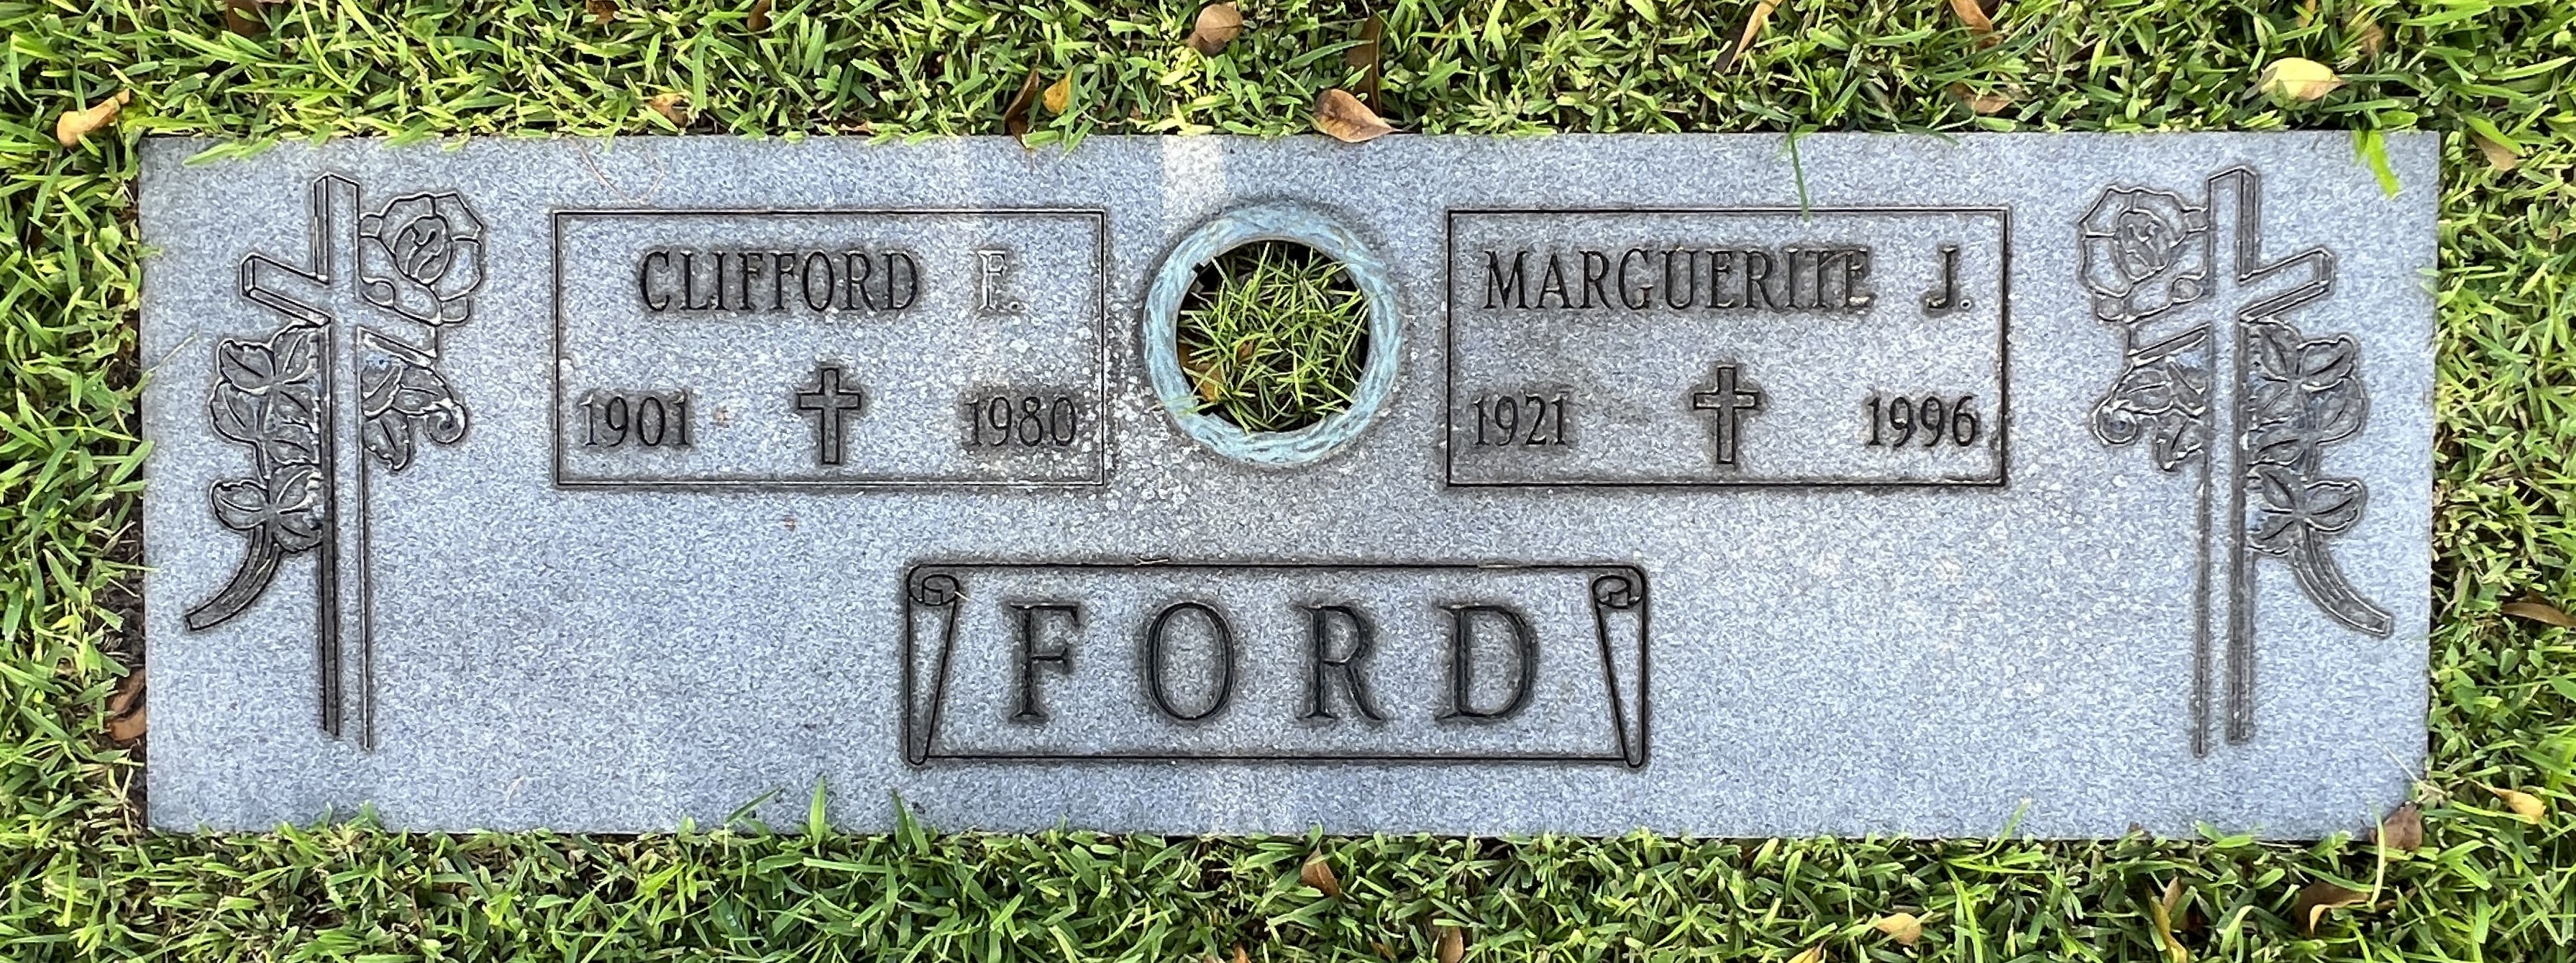 Marguerite J Ford